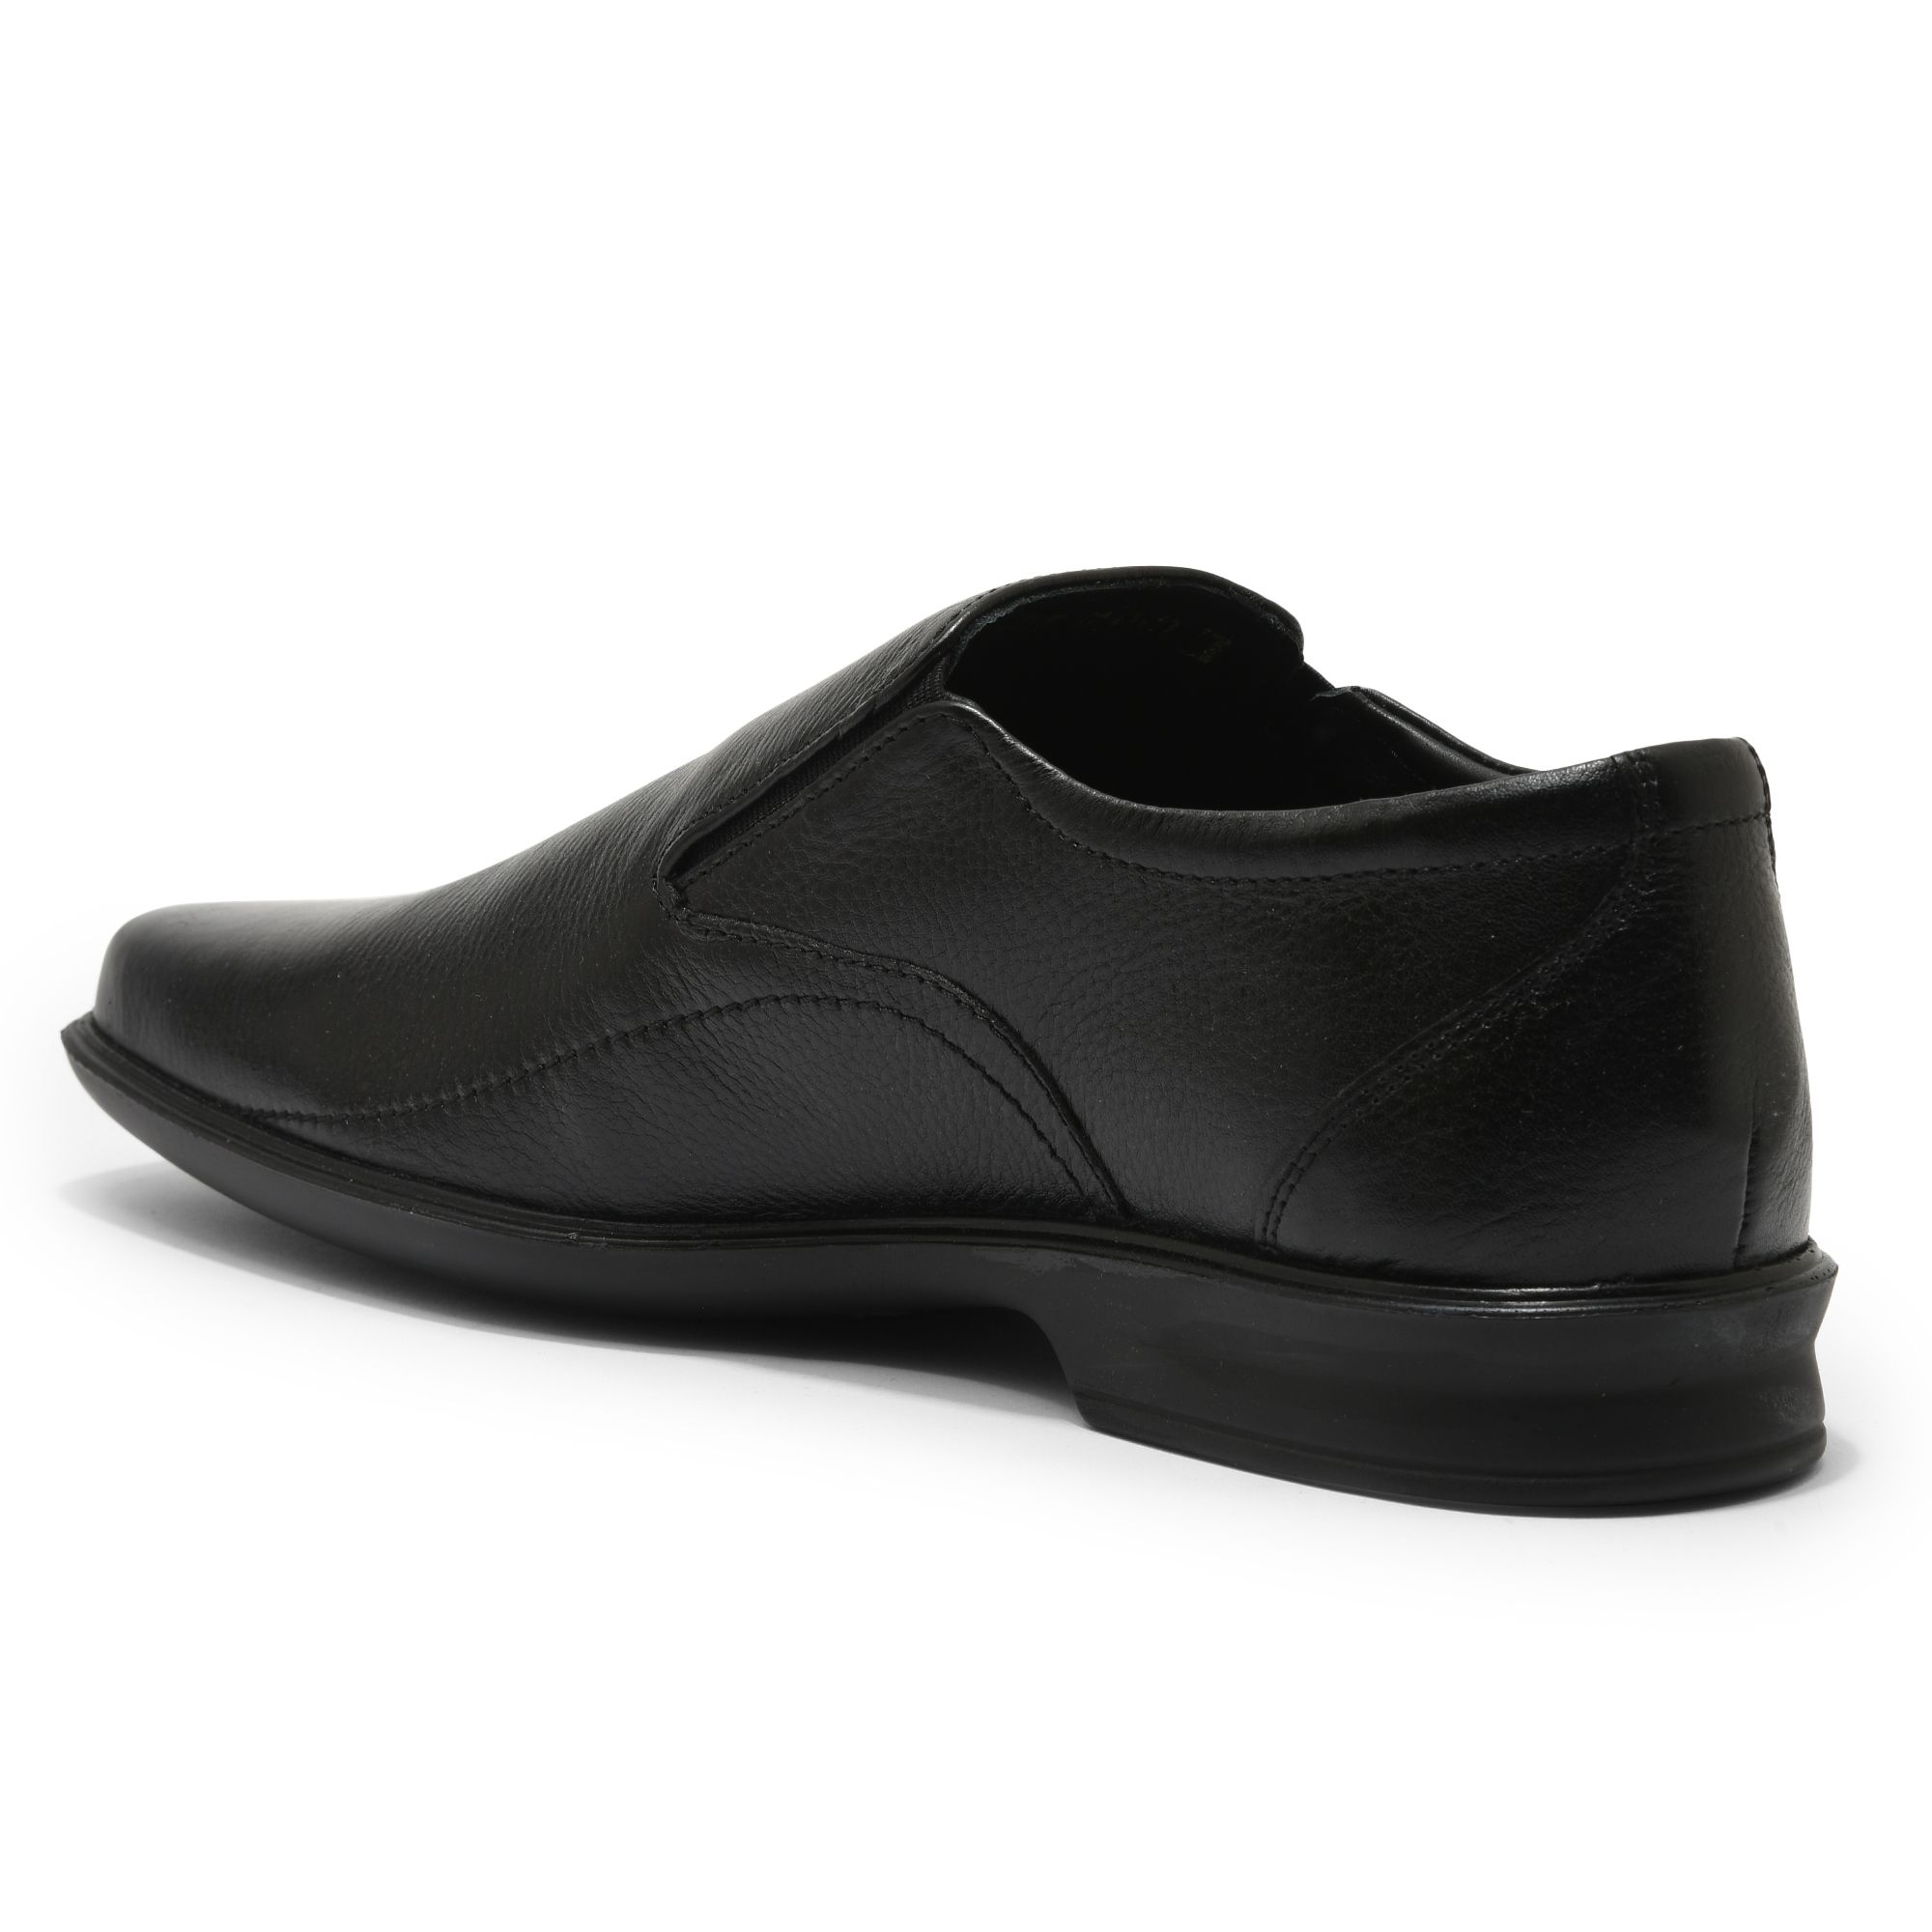 Black formal shoes for men